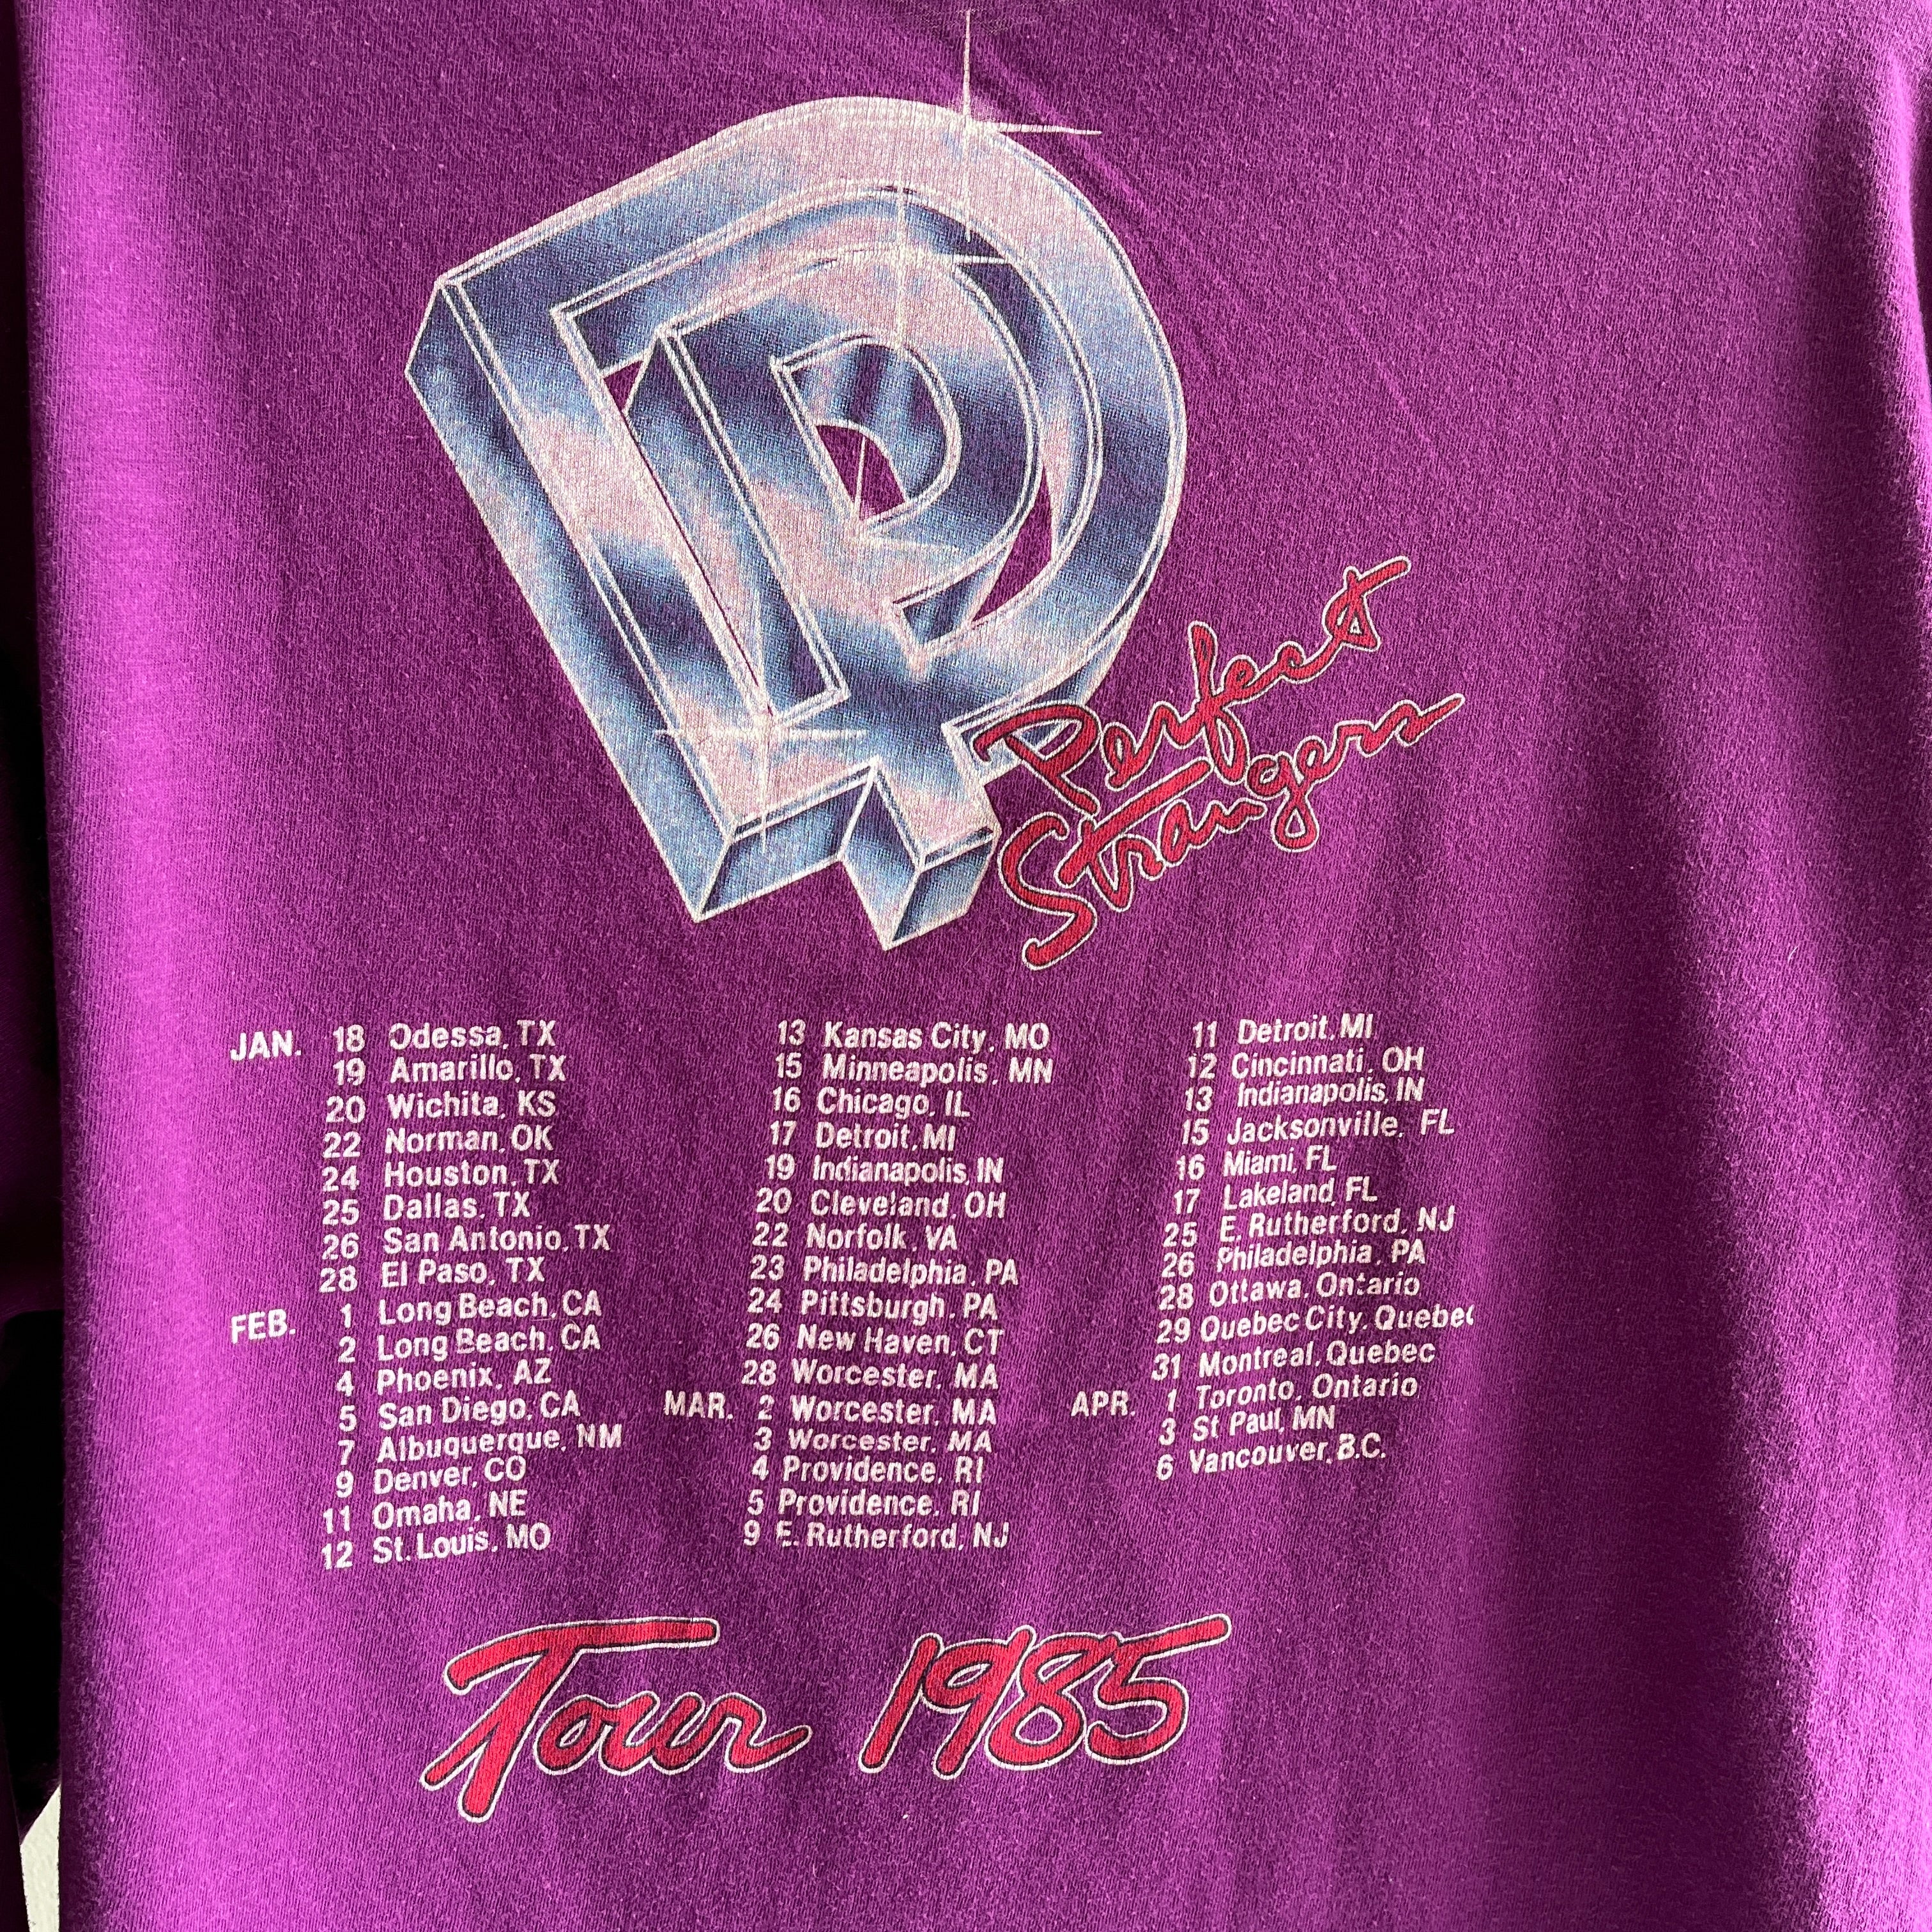 1985 Deep Purple USA T-shirt en coton doux à manches longues - OMFG!!!!